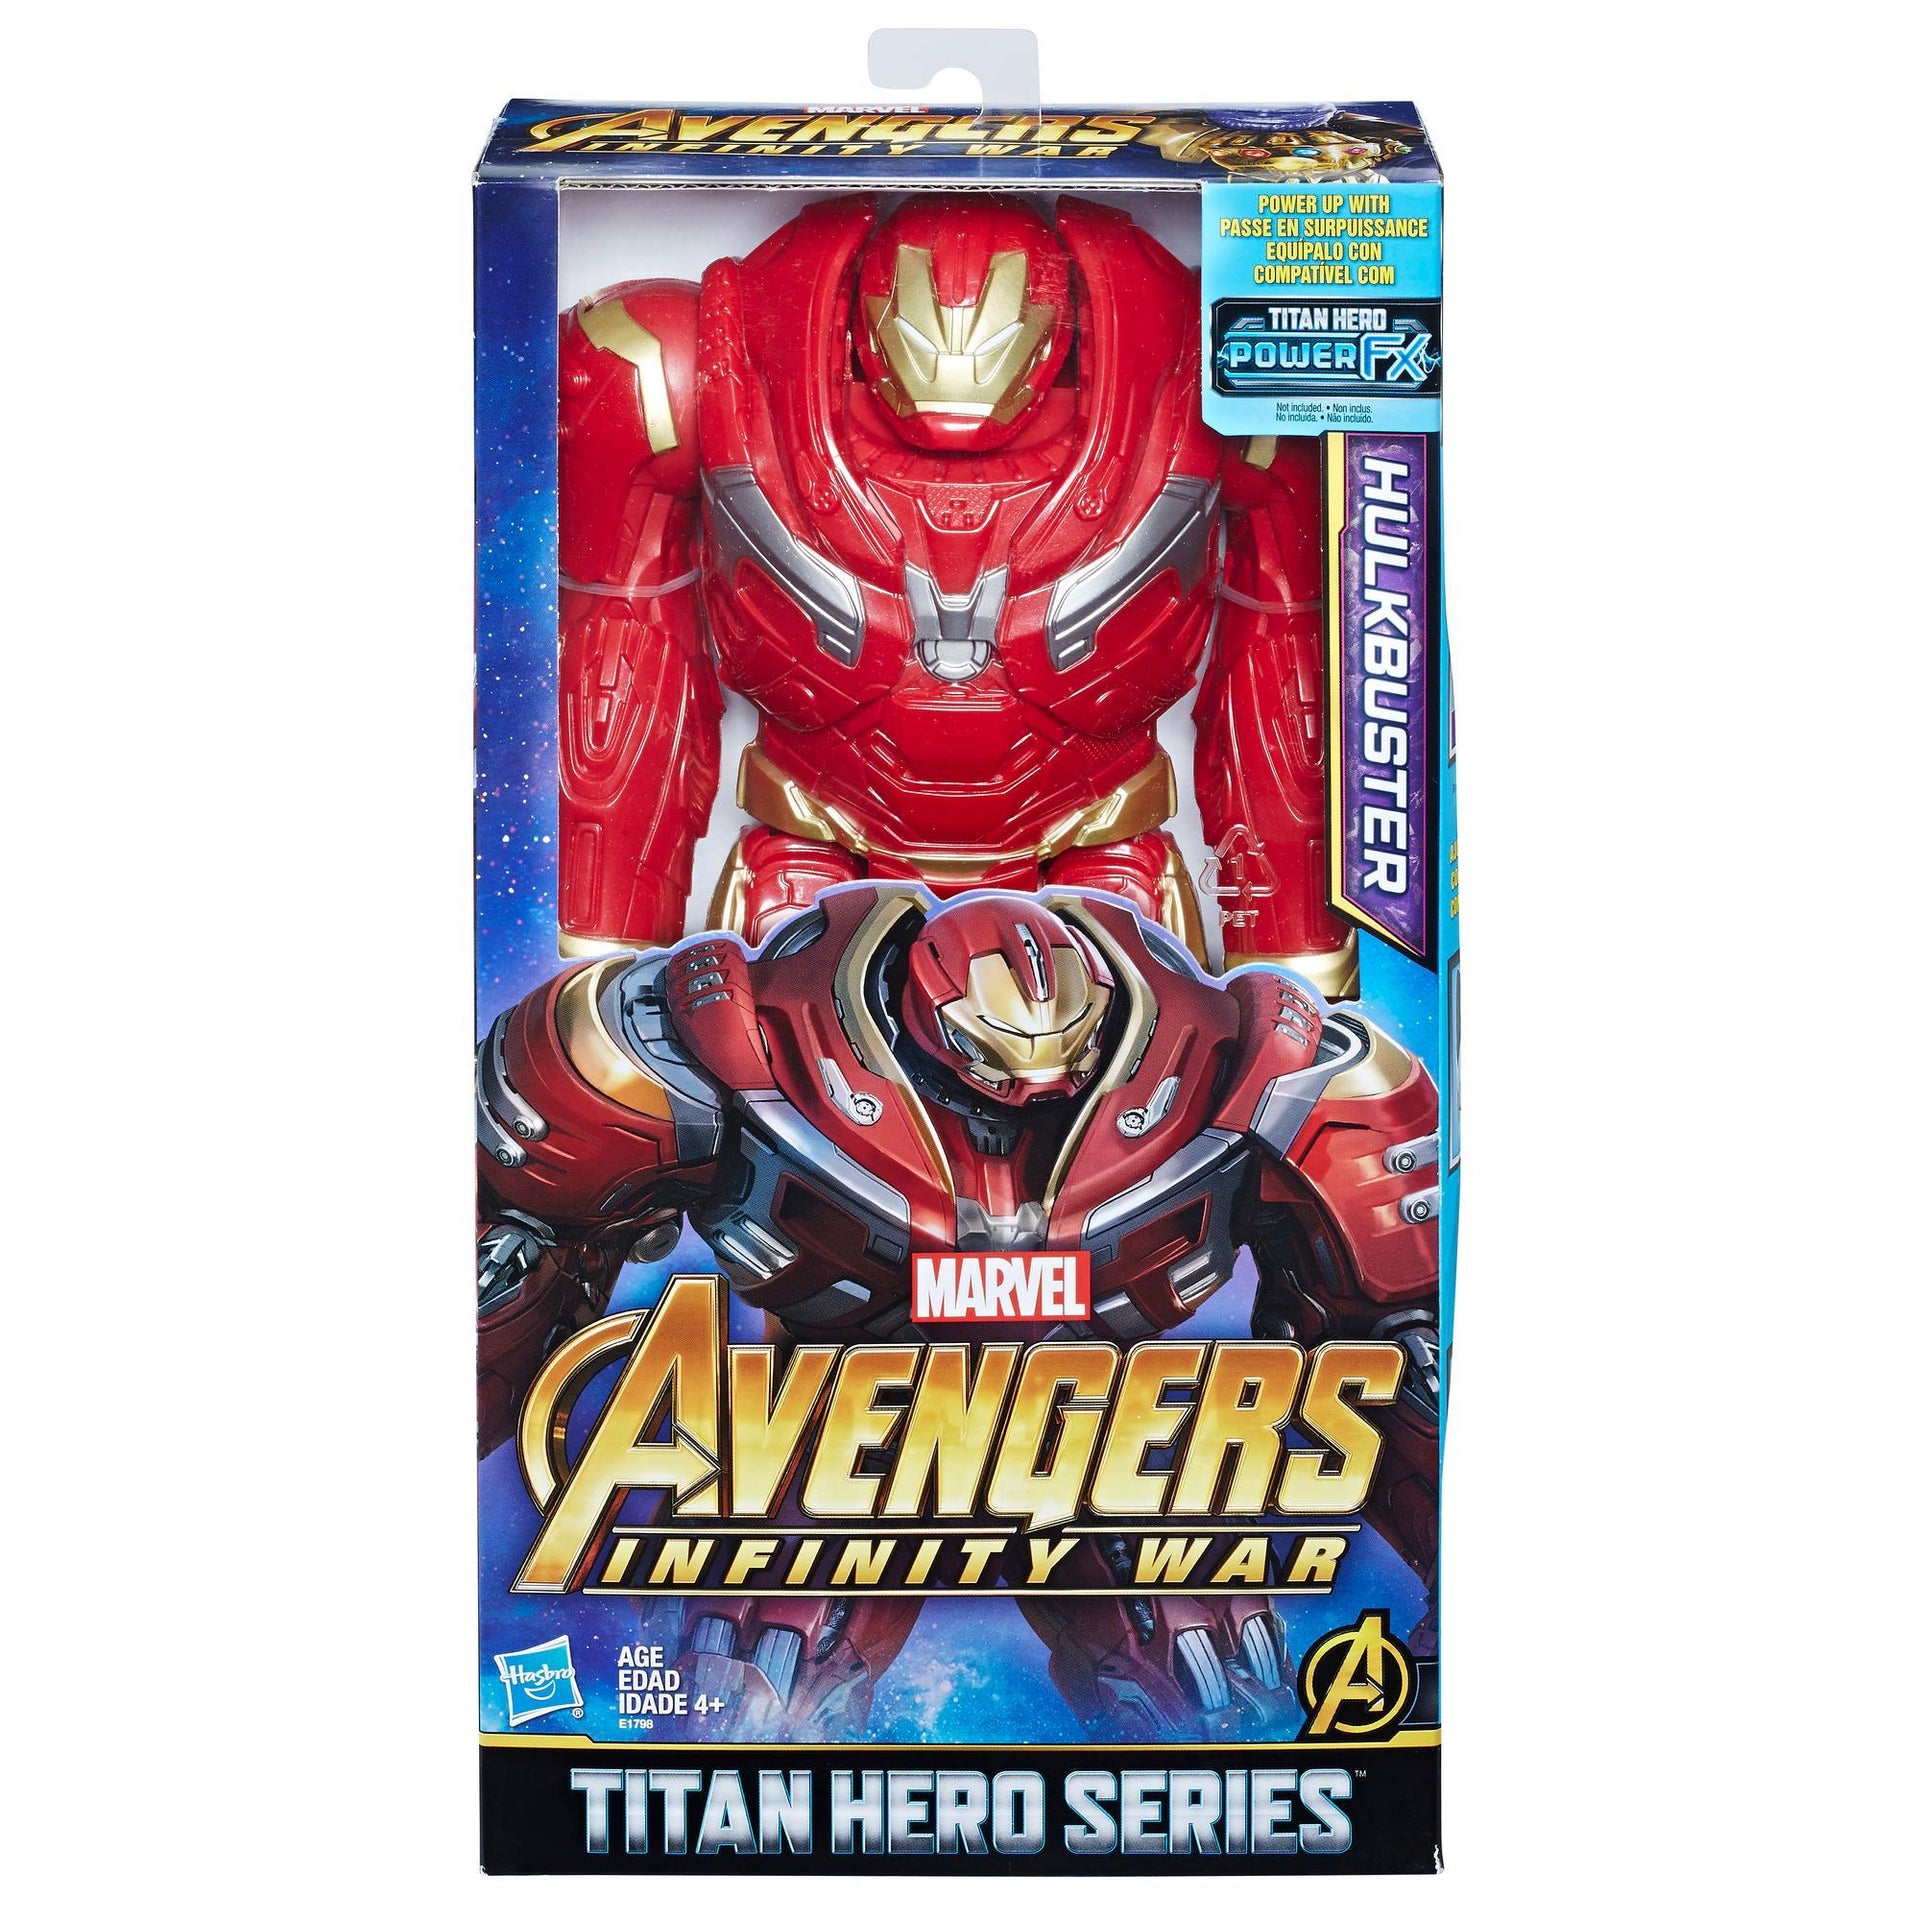 Marvel Infinity War Titan Hero Series Hulkbuster with Titan Hero Power FX Port - Nerd Arena